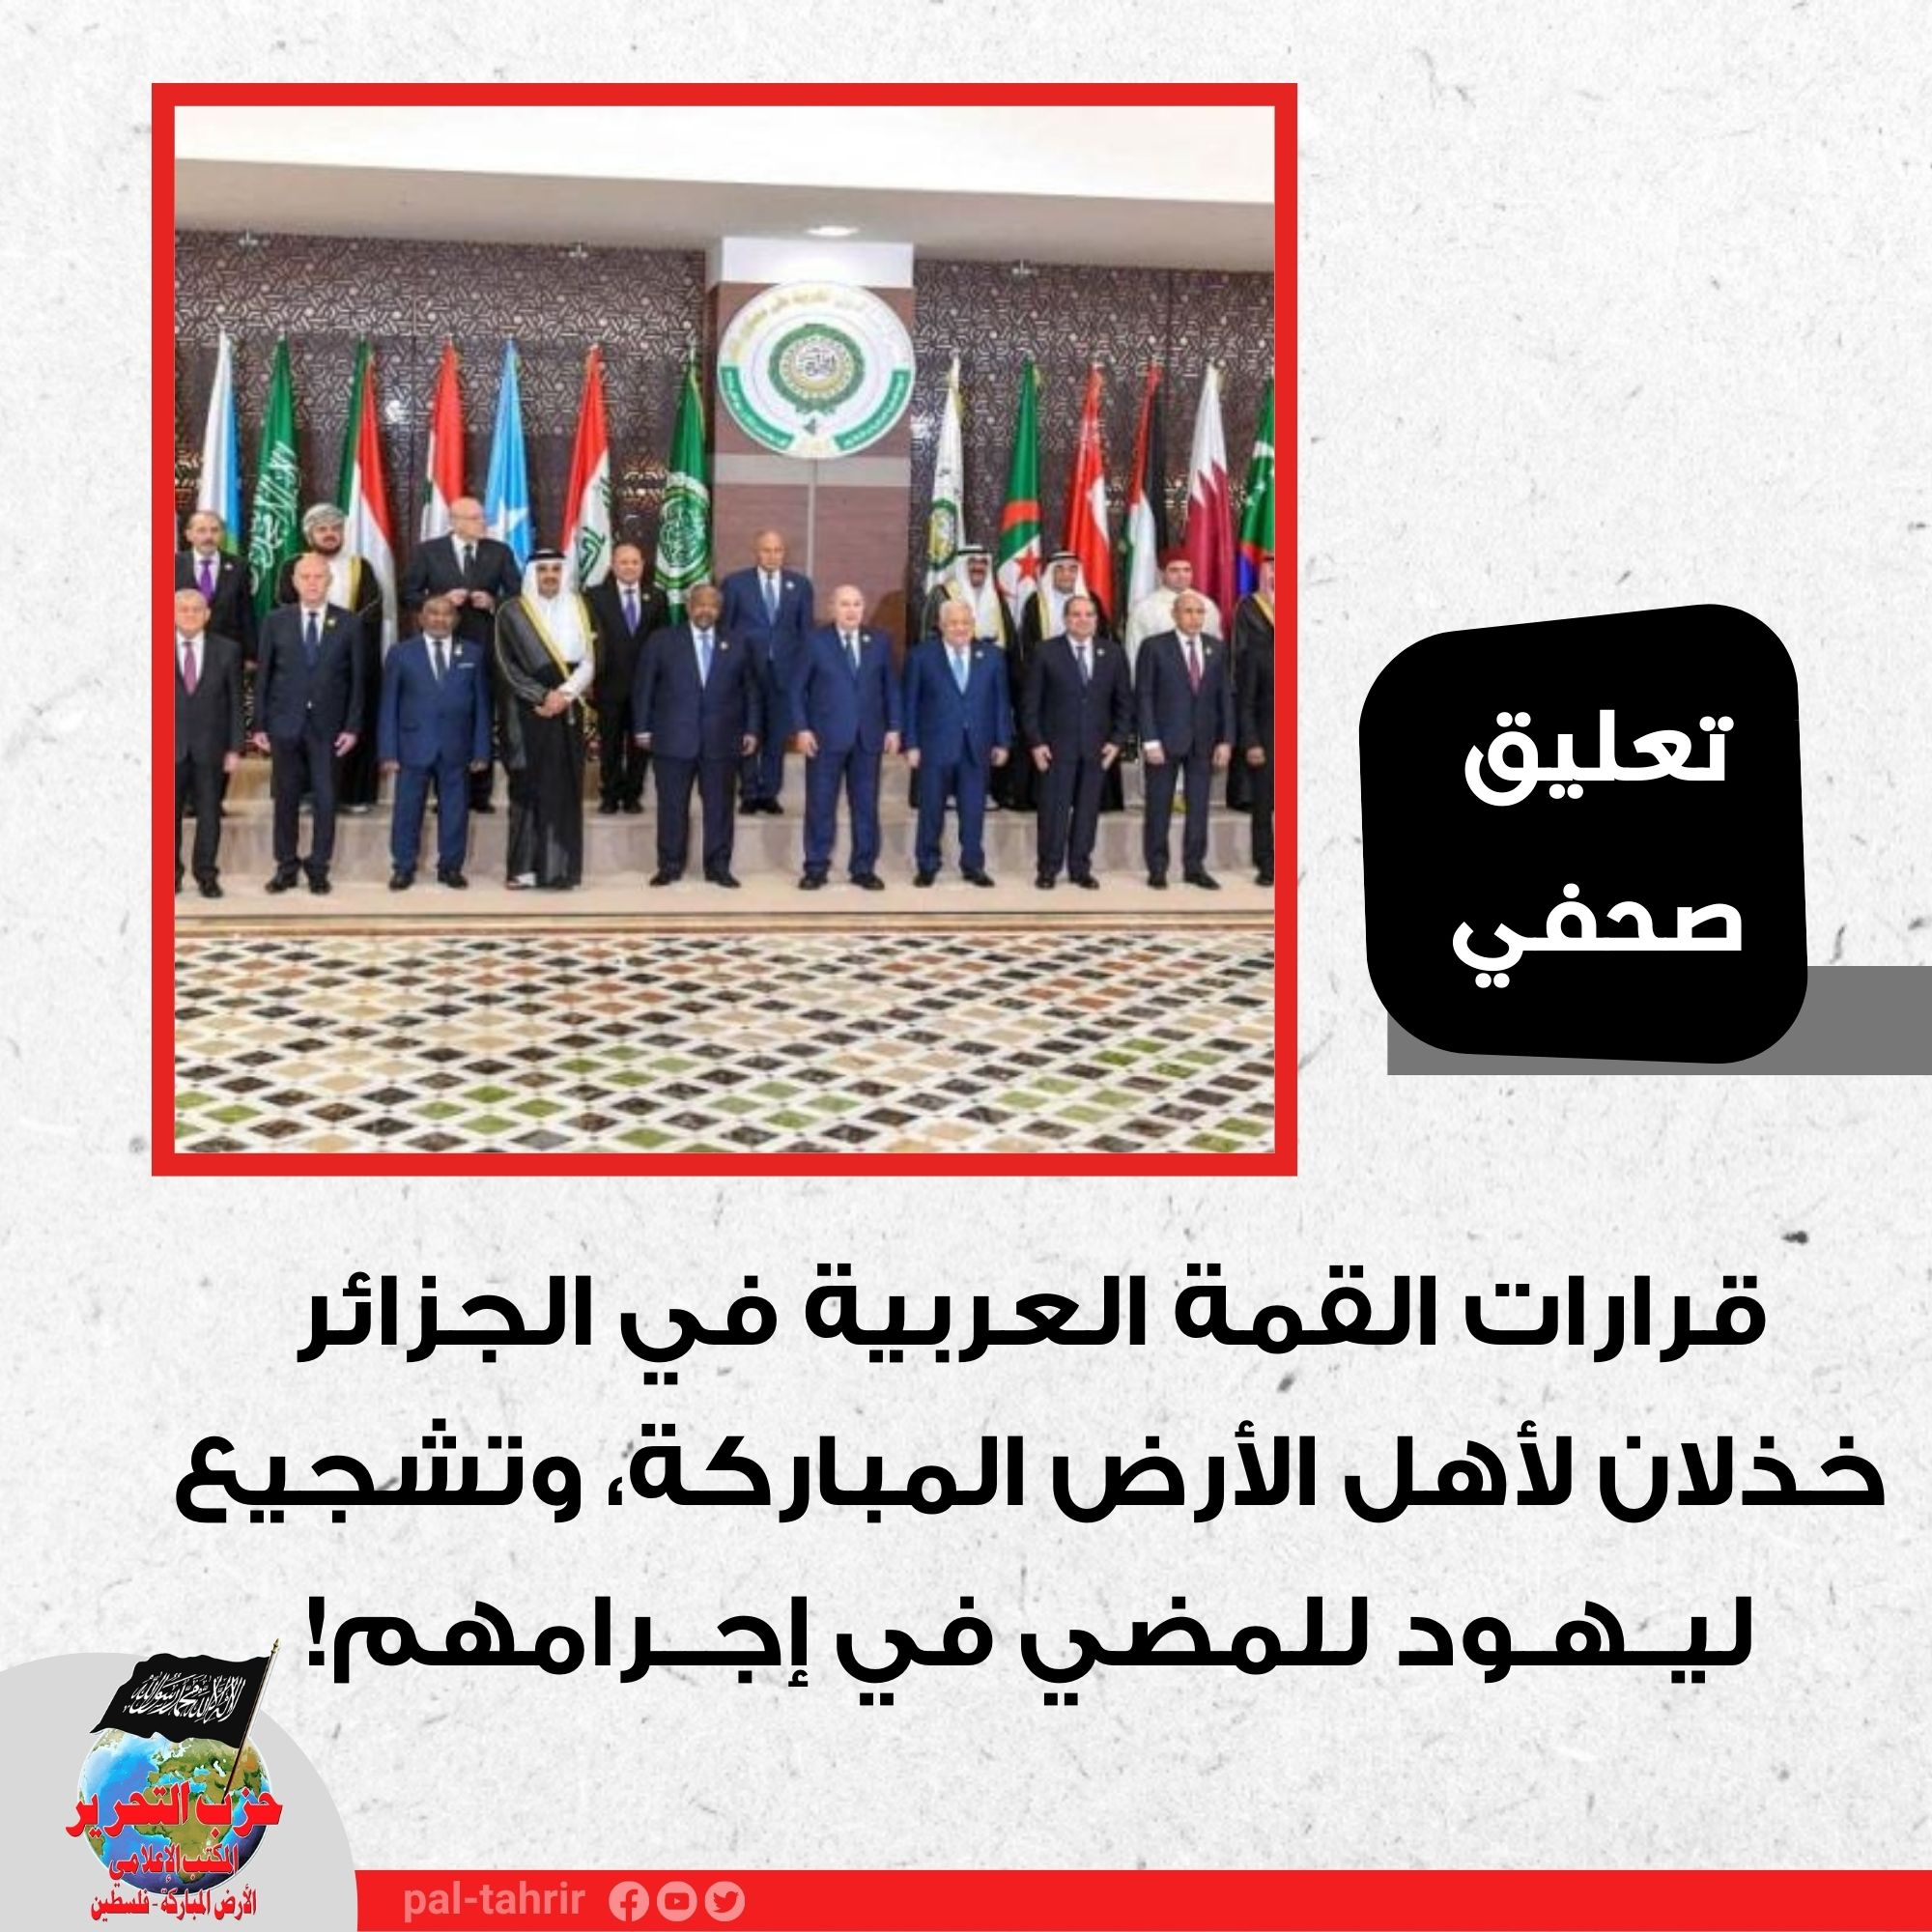 تعليق صحفي: قرارات القمة العربية في الجزائر خذلان لأهل الأرض المباركة، وتشجيع ليهود للمضي في إجرامهم!